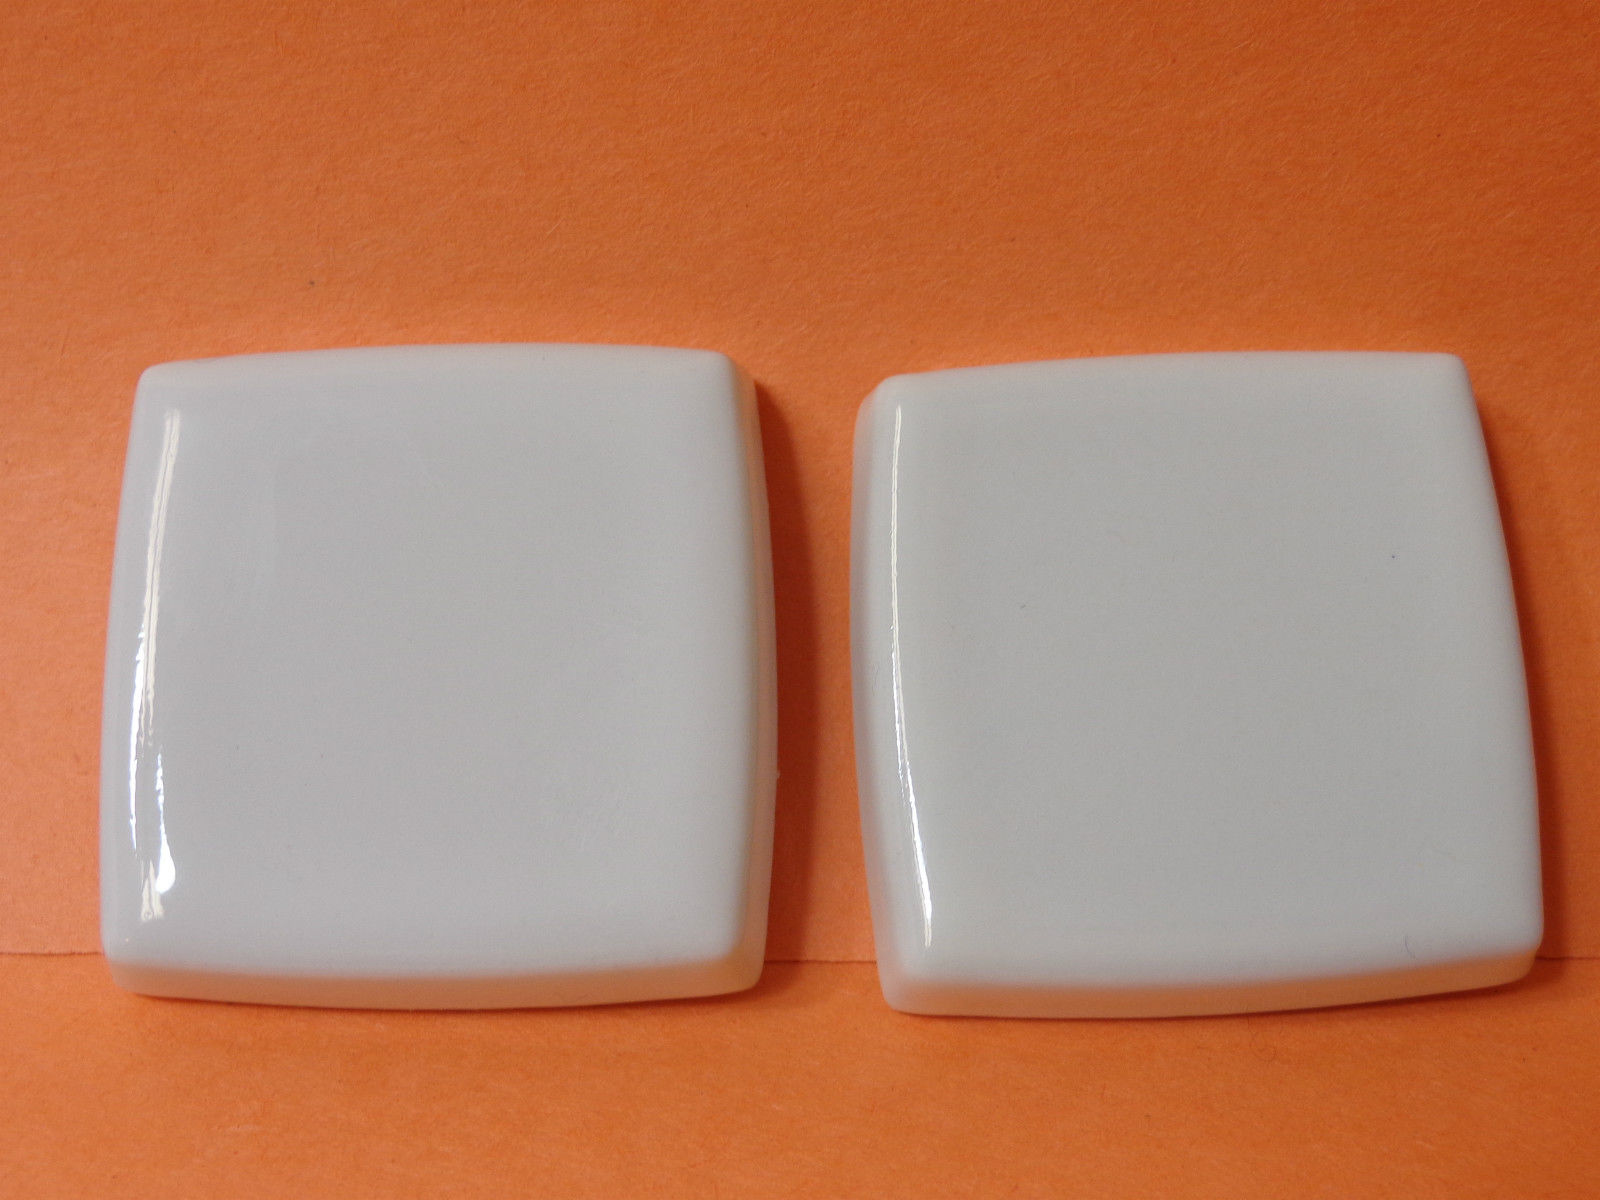 Kohler | 9926-12 | KL9926-12 (22493-12) Kohler Alterna Large 2-1/2" Square Ceramic Inserts - JERSEY CREAM